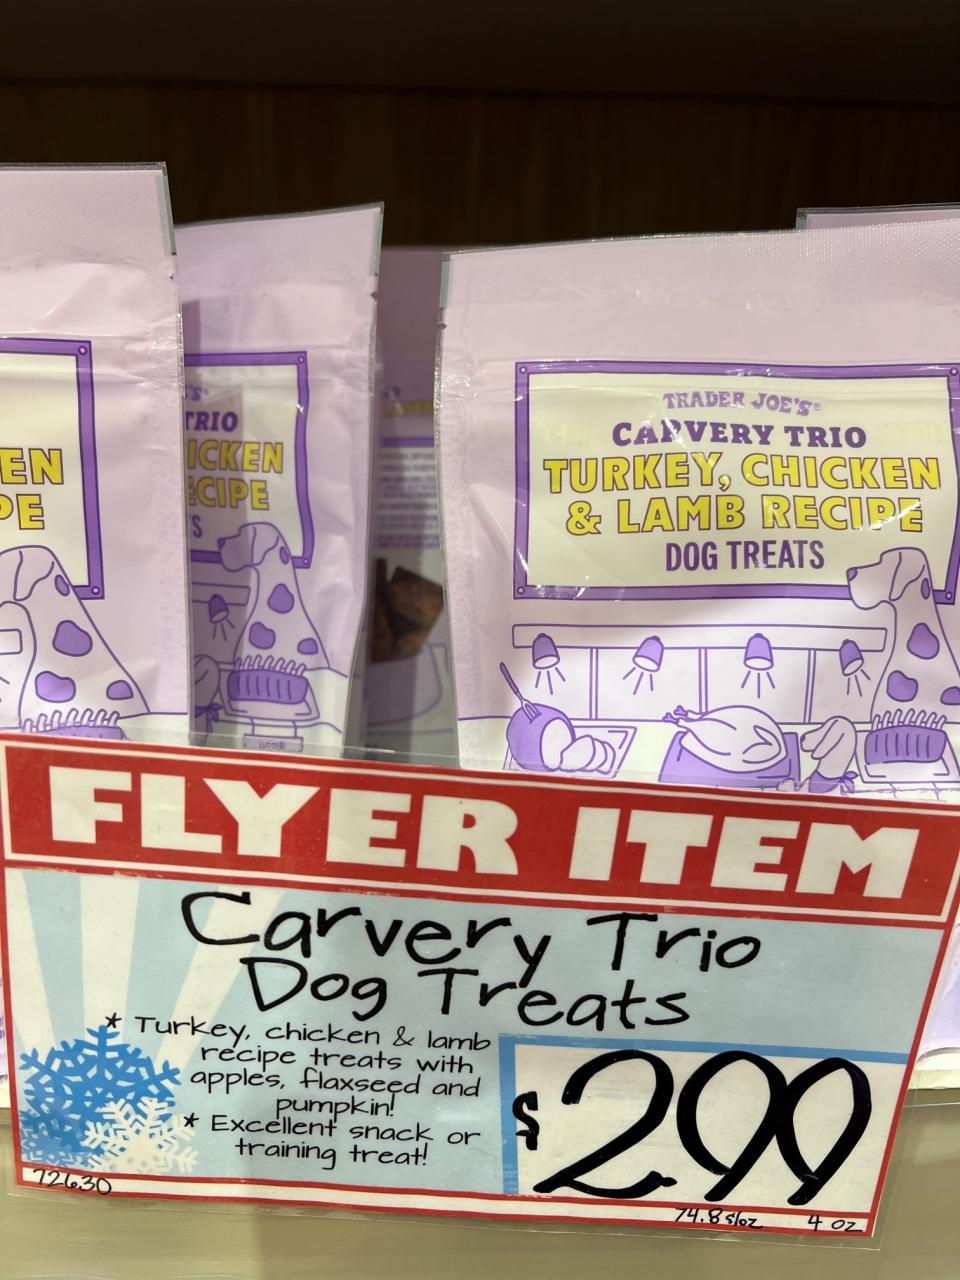 Carvery Trio Turkey, Chicken, and Lamb Recipe Dog Treats